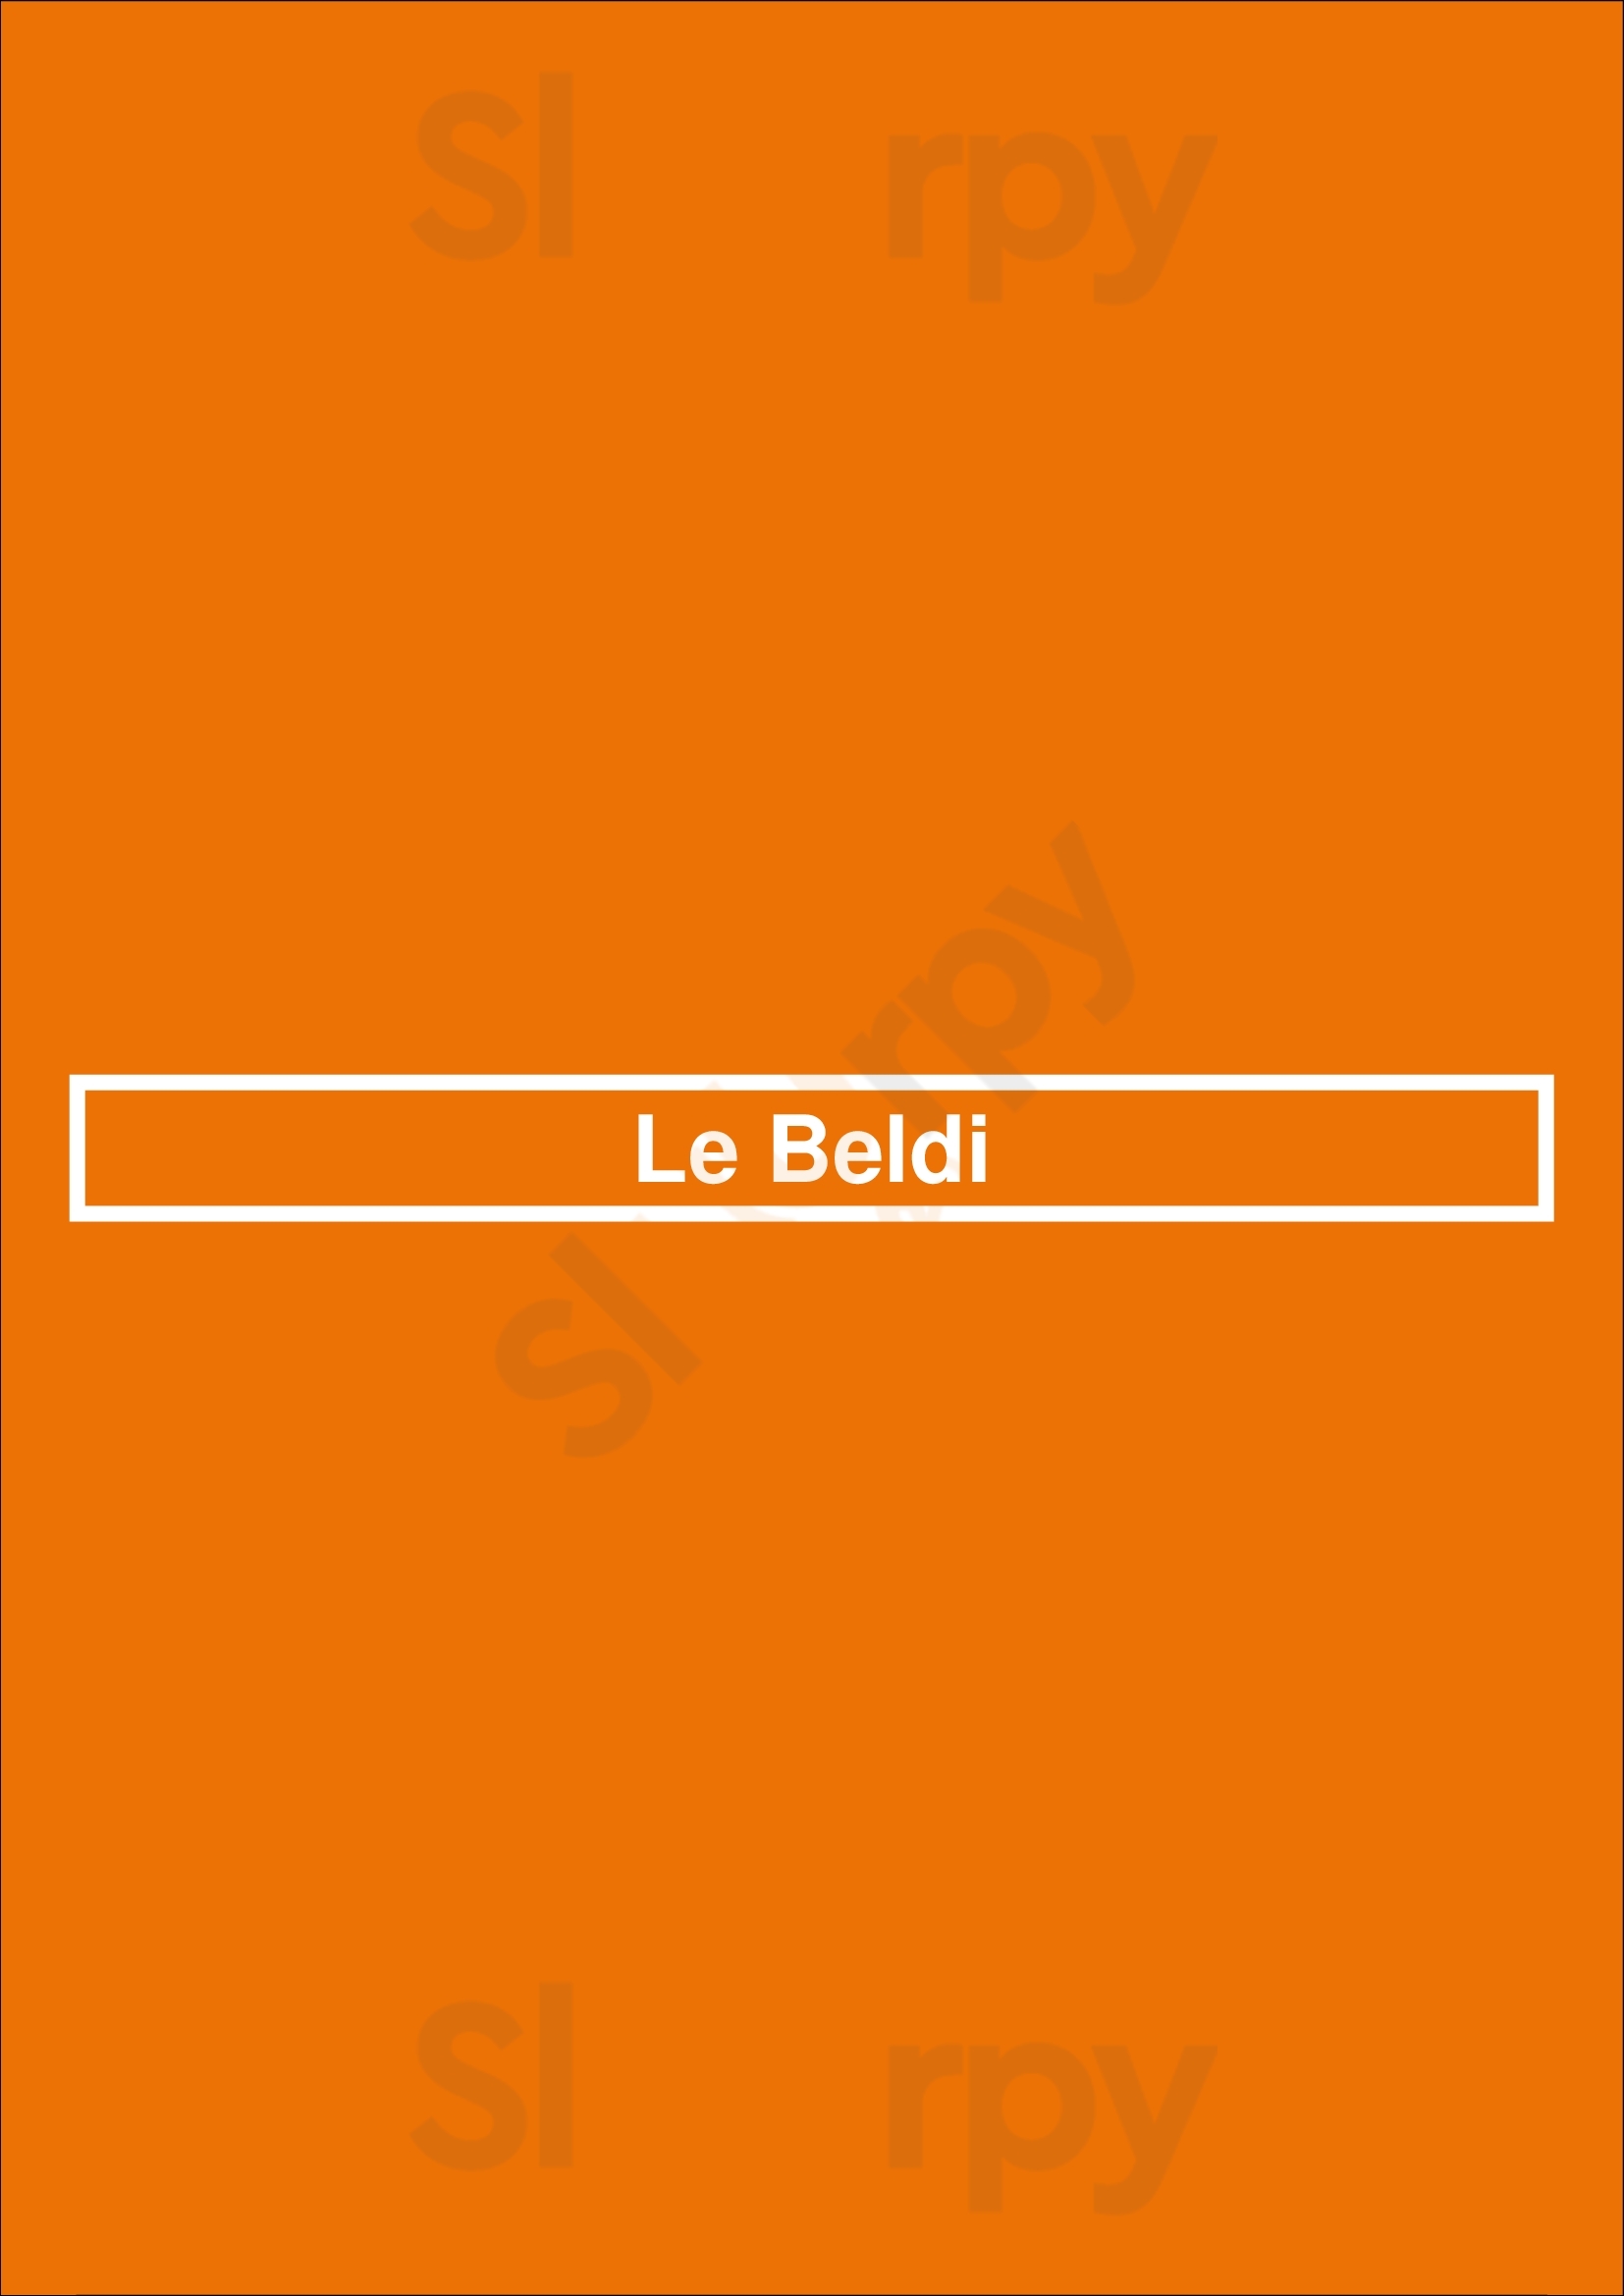 Le Beldi Paris Menu - 1